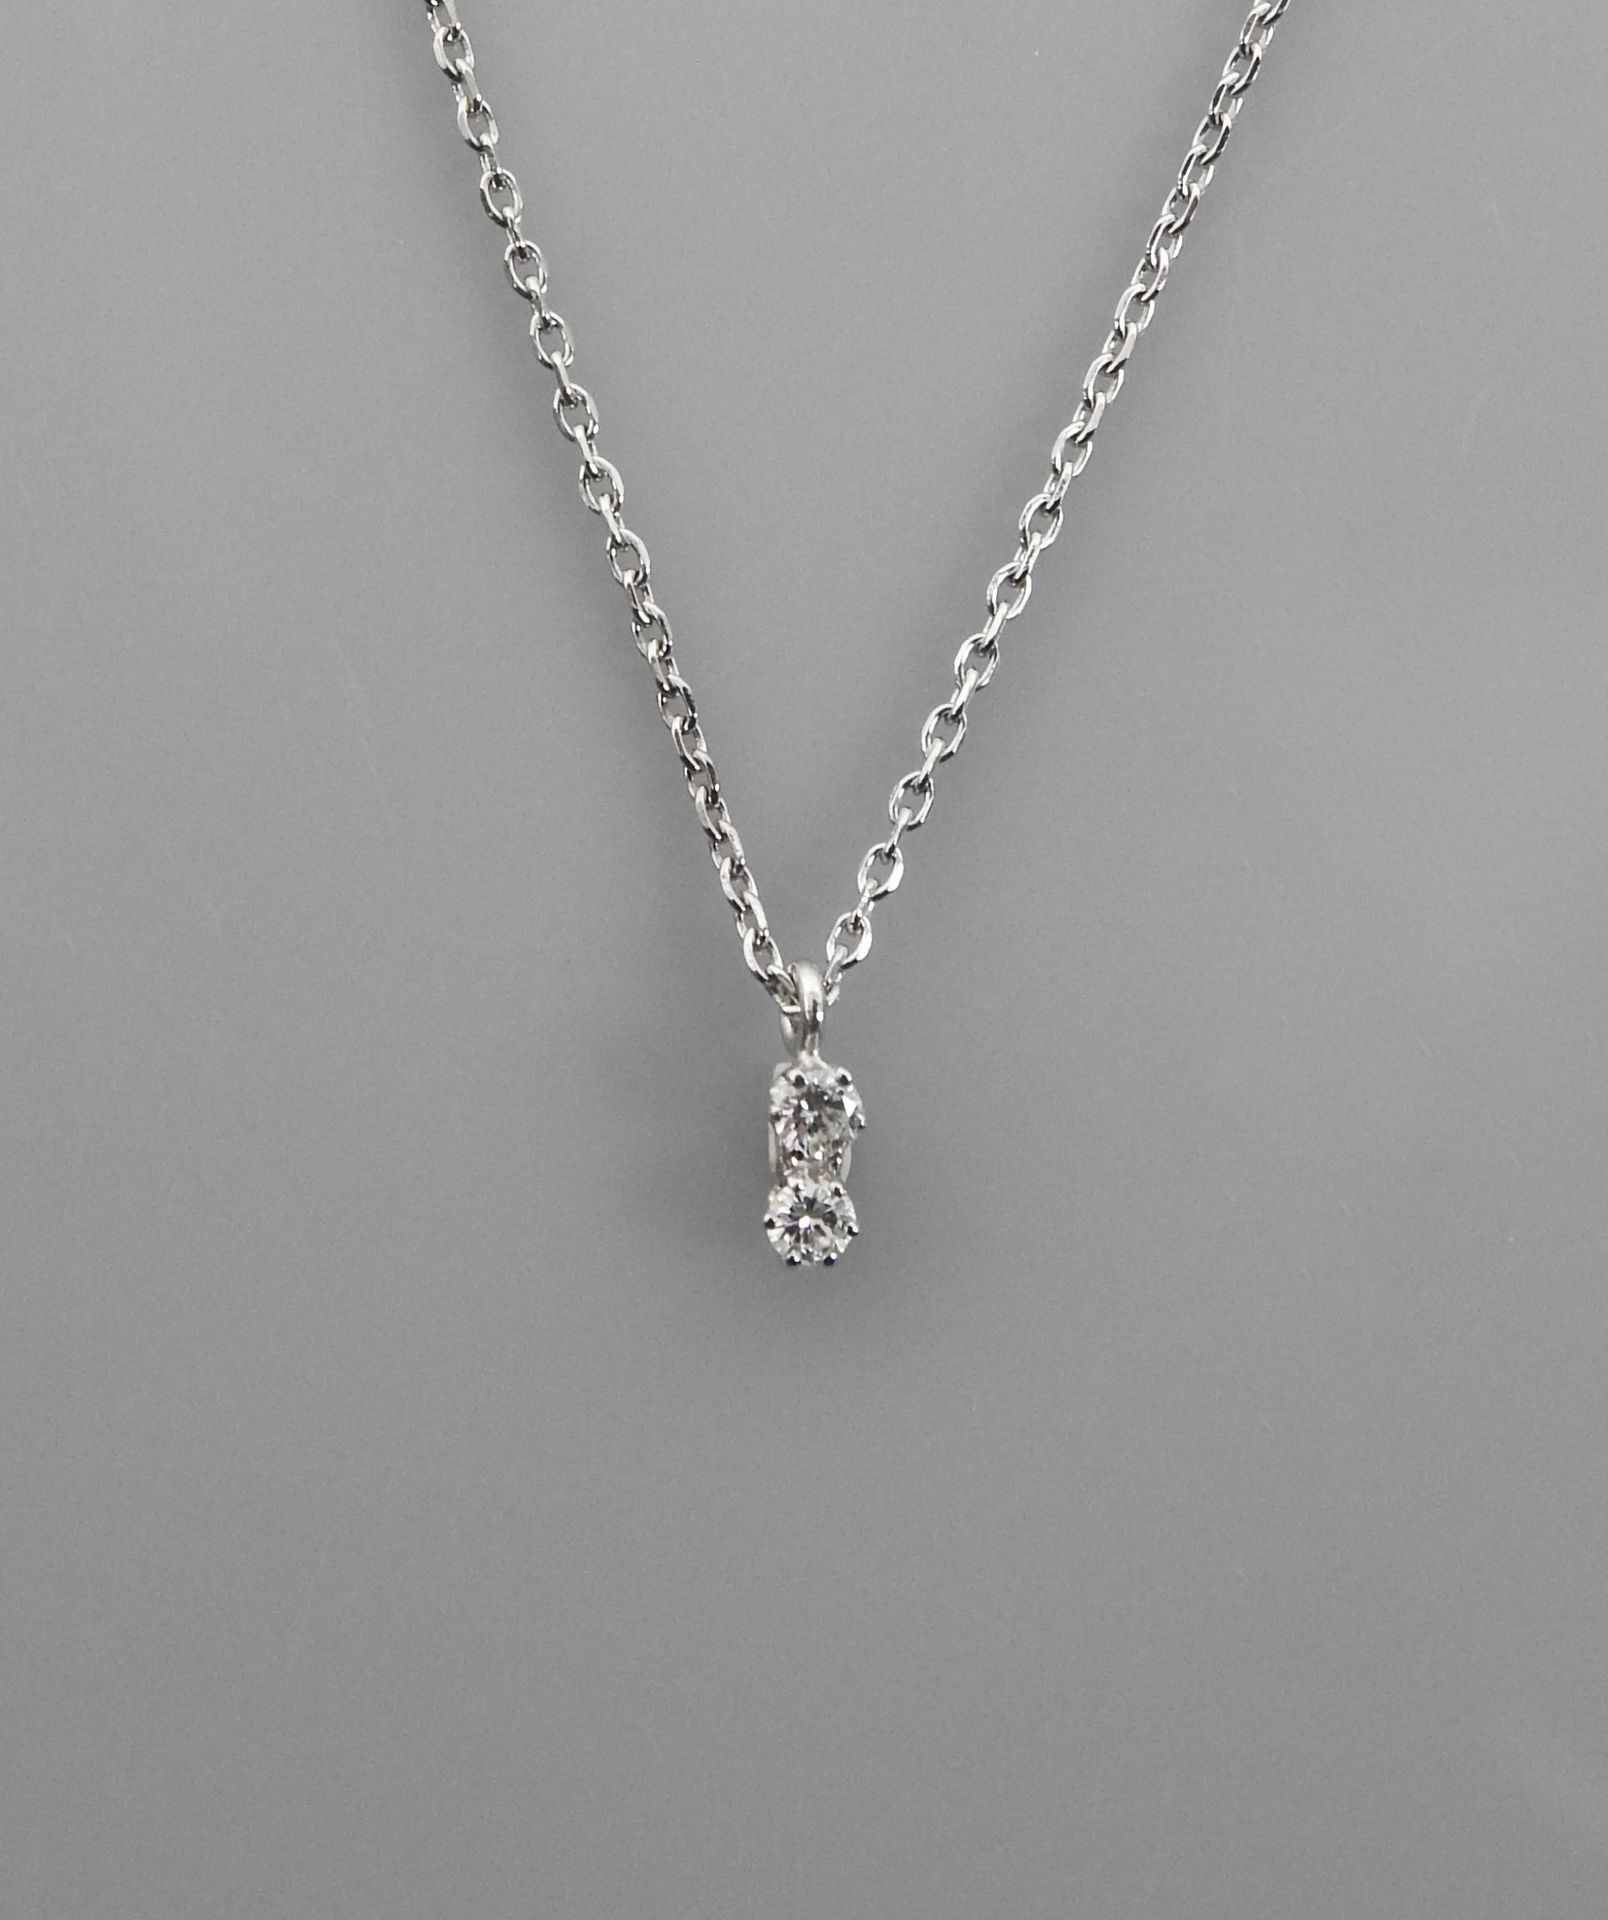 Null 白金链条和吊坠，750毫米，镶嵌两颗钻石，长39厘米，重量：1.4克，毛重。